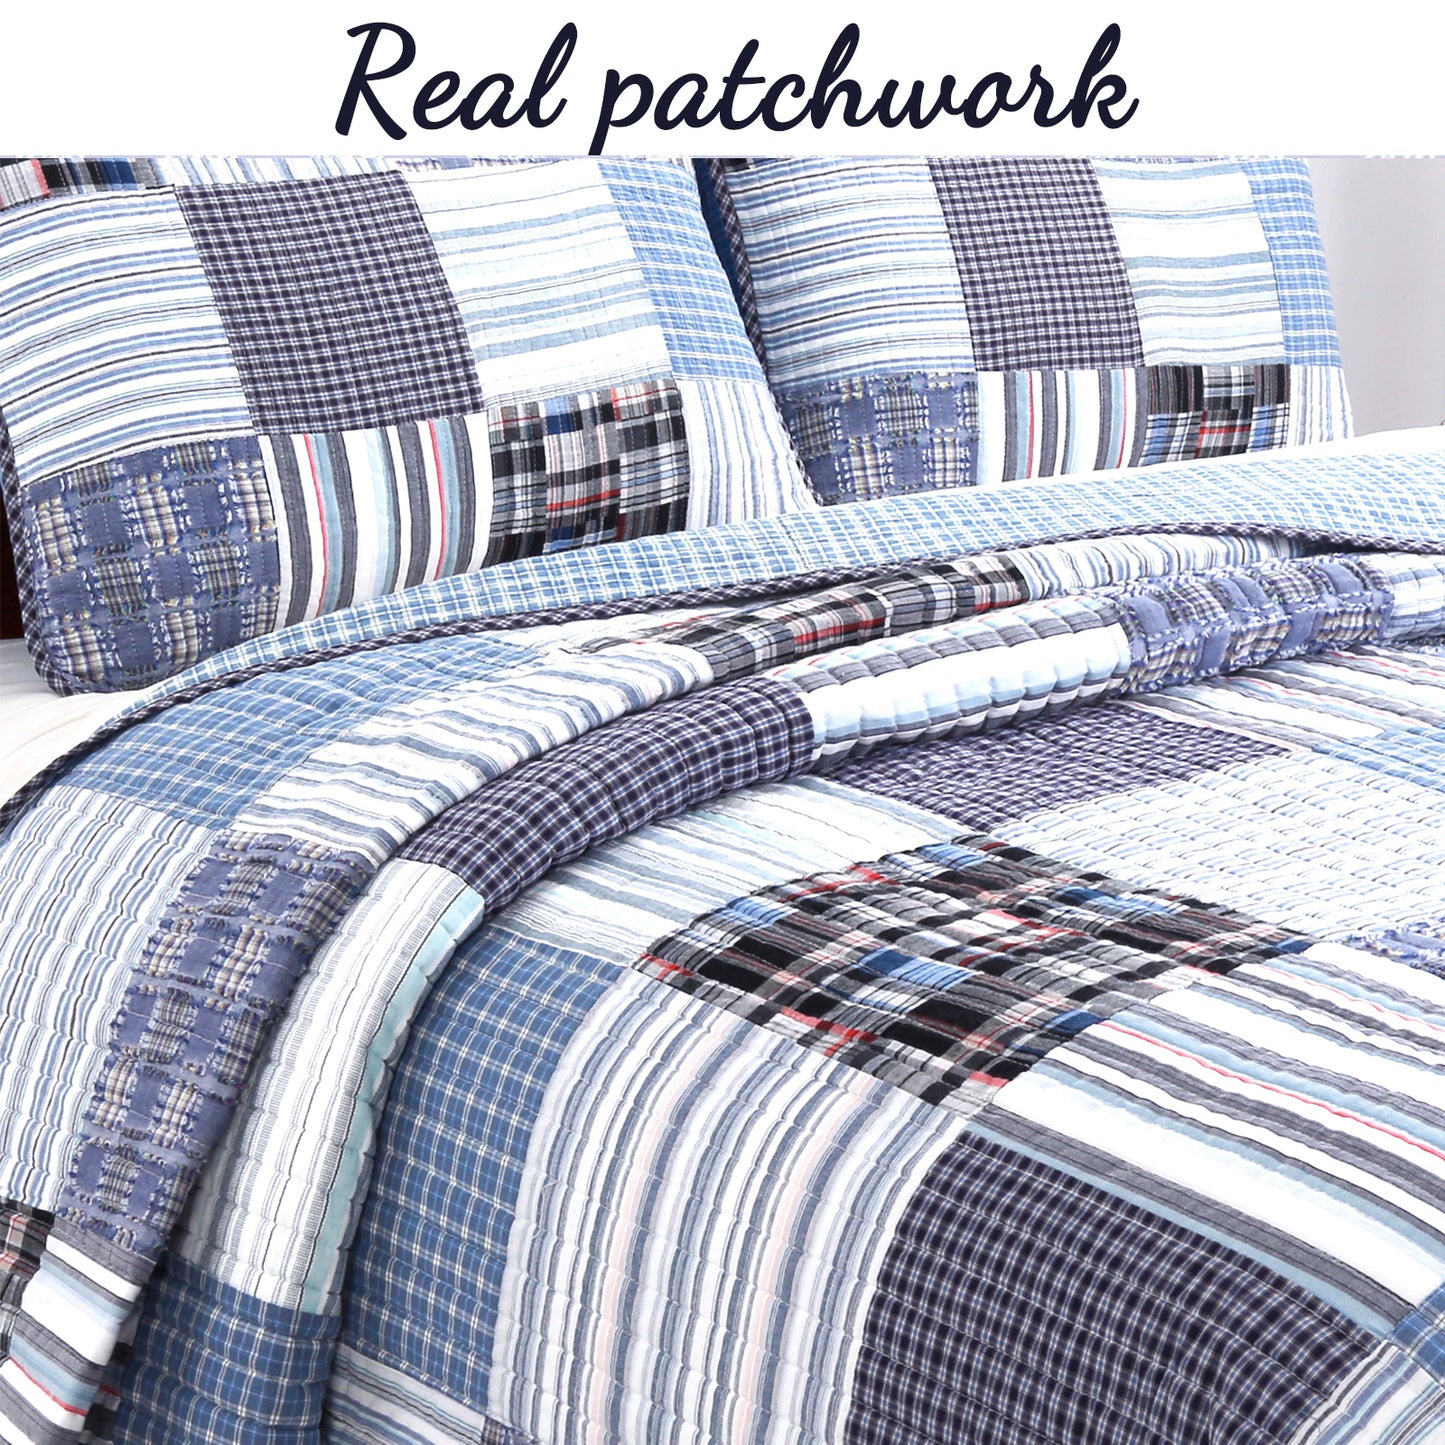 Daniel Stripe Plaid Blue Real Patchwork Cotton Reversible Quilt Bedding Set